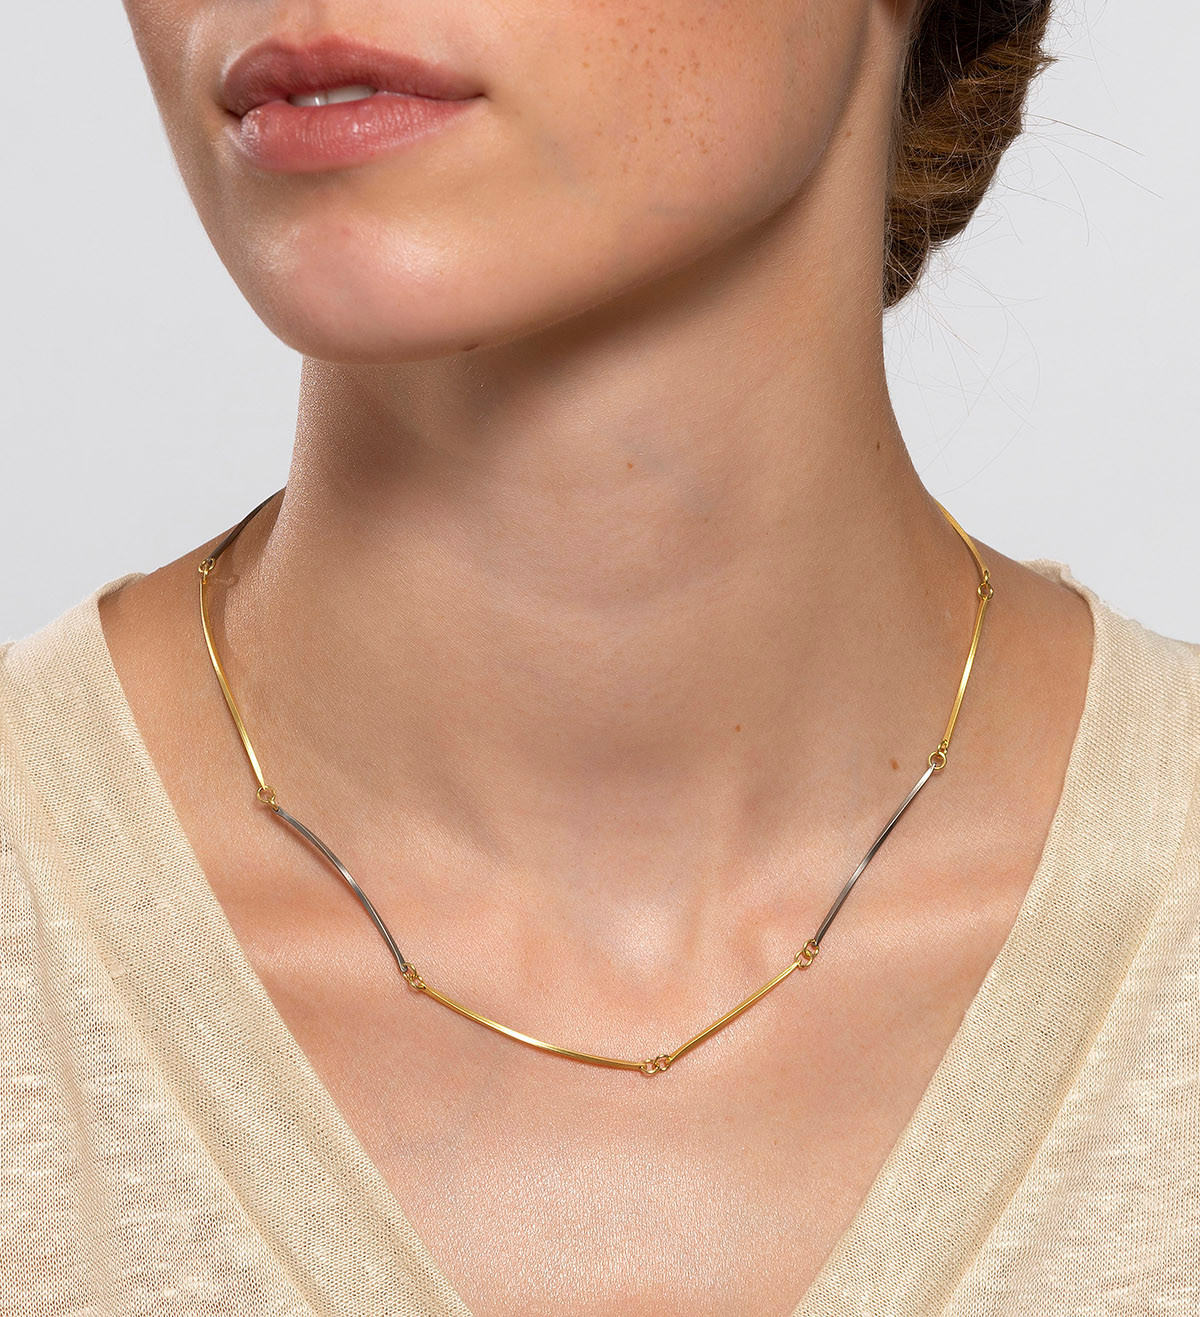 18k gold and titanium necklace Pinassa 43.5cm